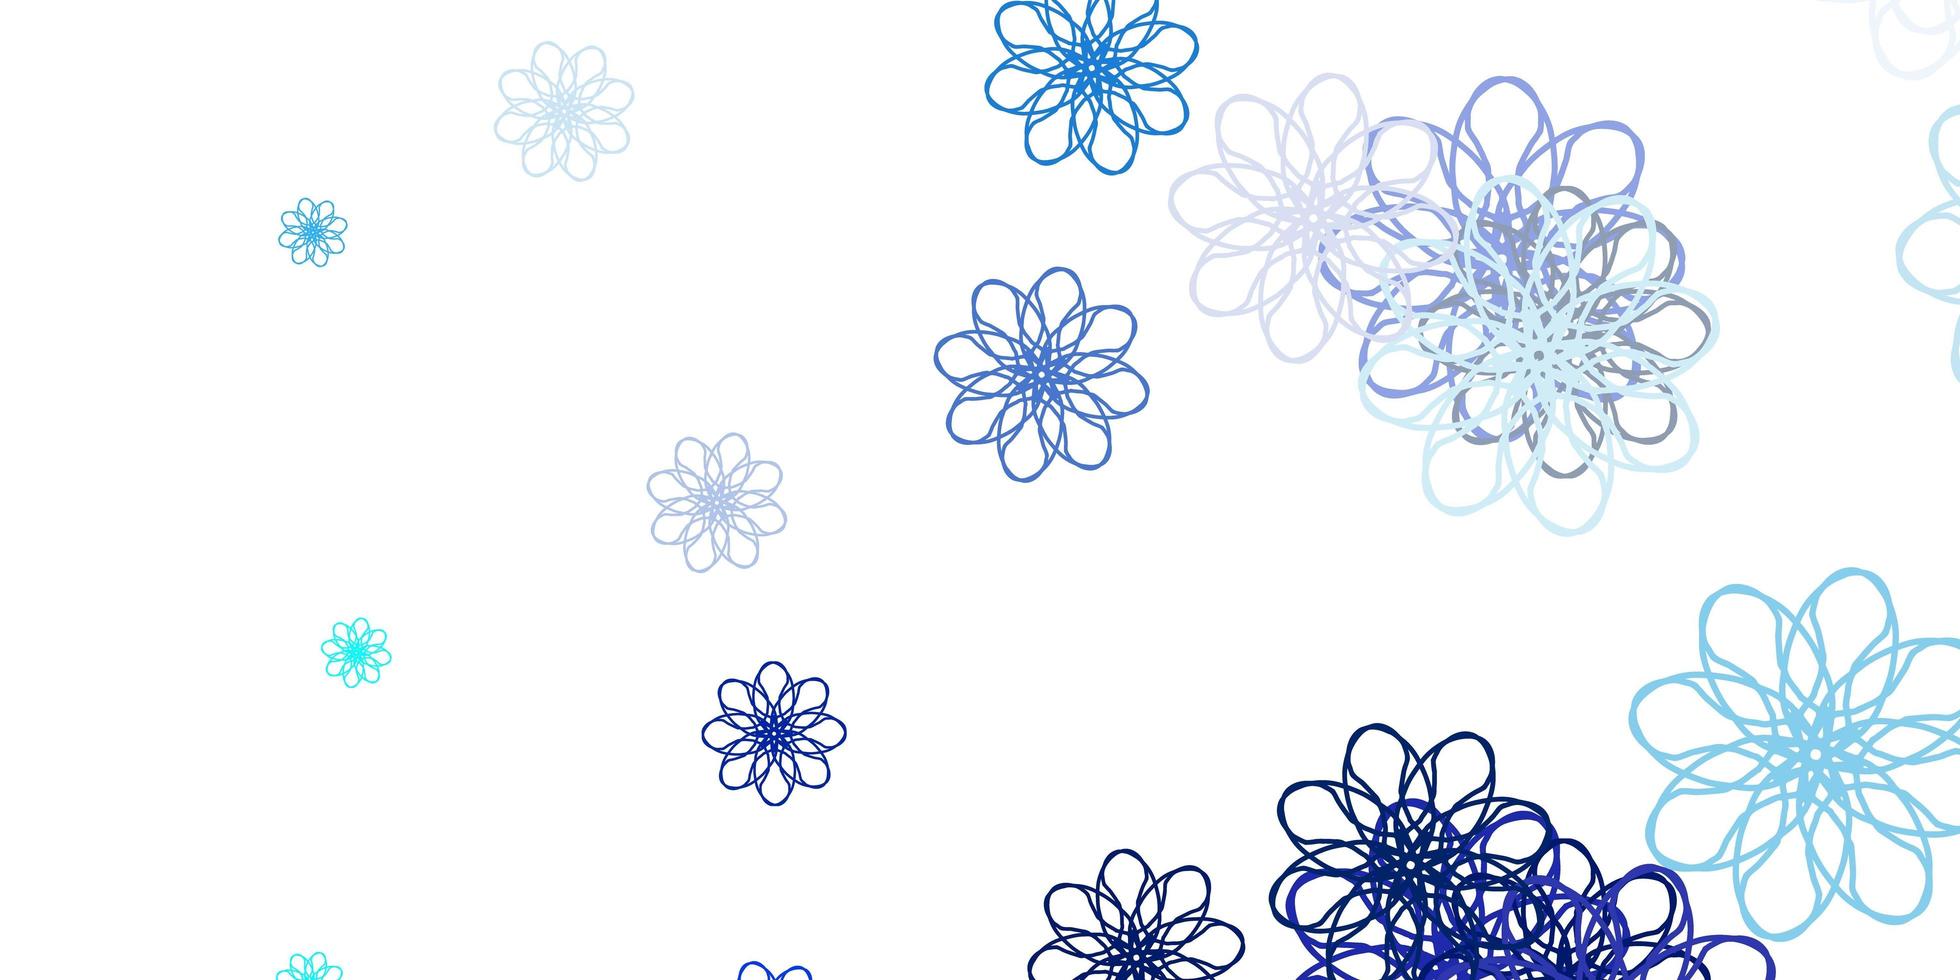 disposition naturelle de vecteur bleu clair avec des fleurs.